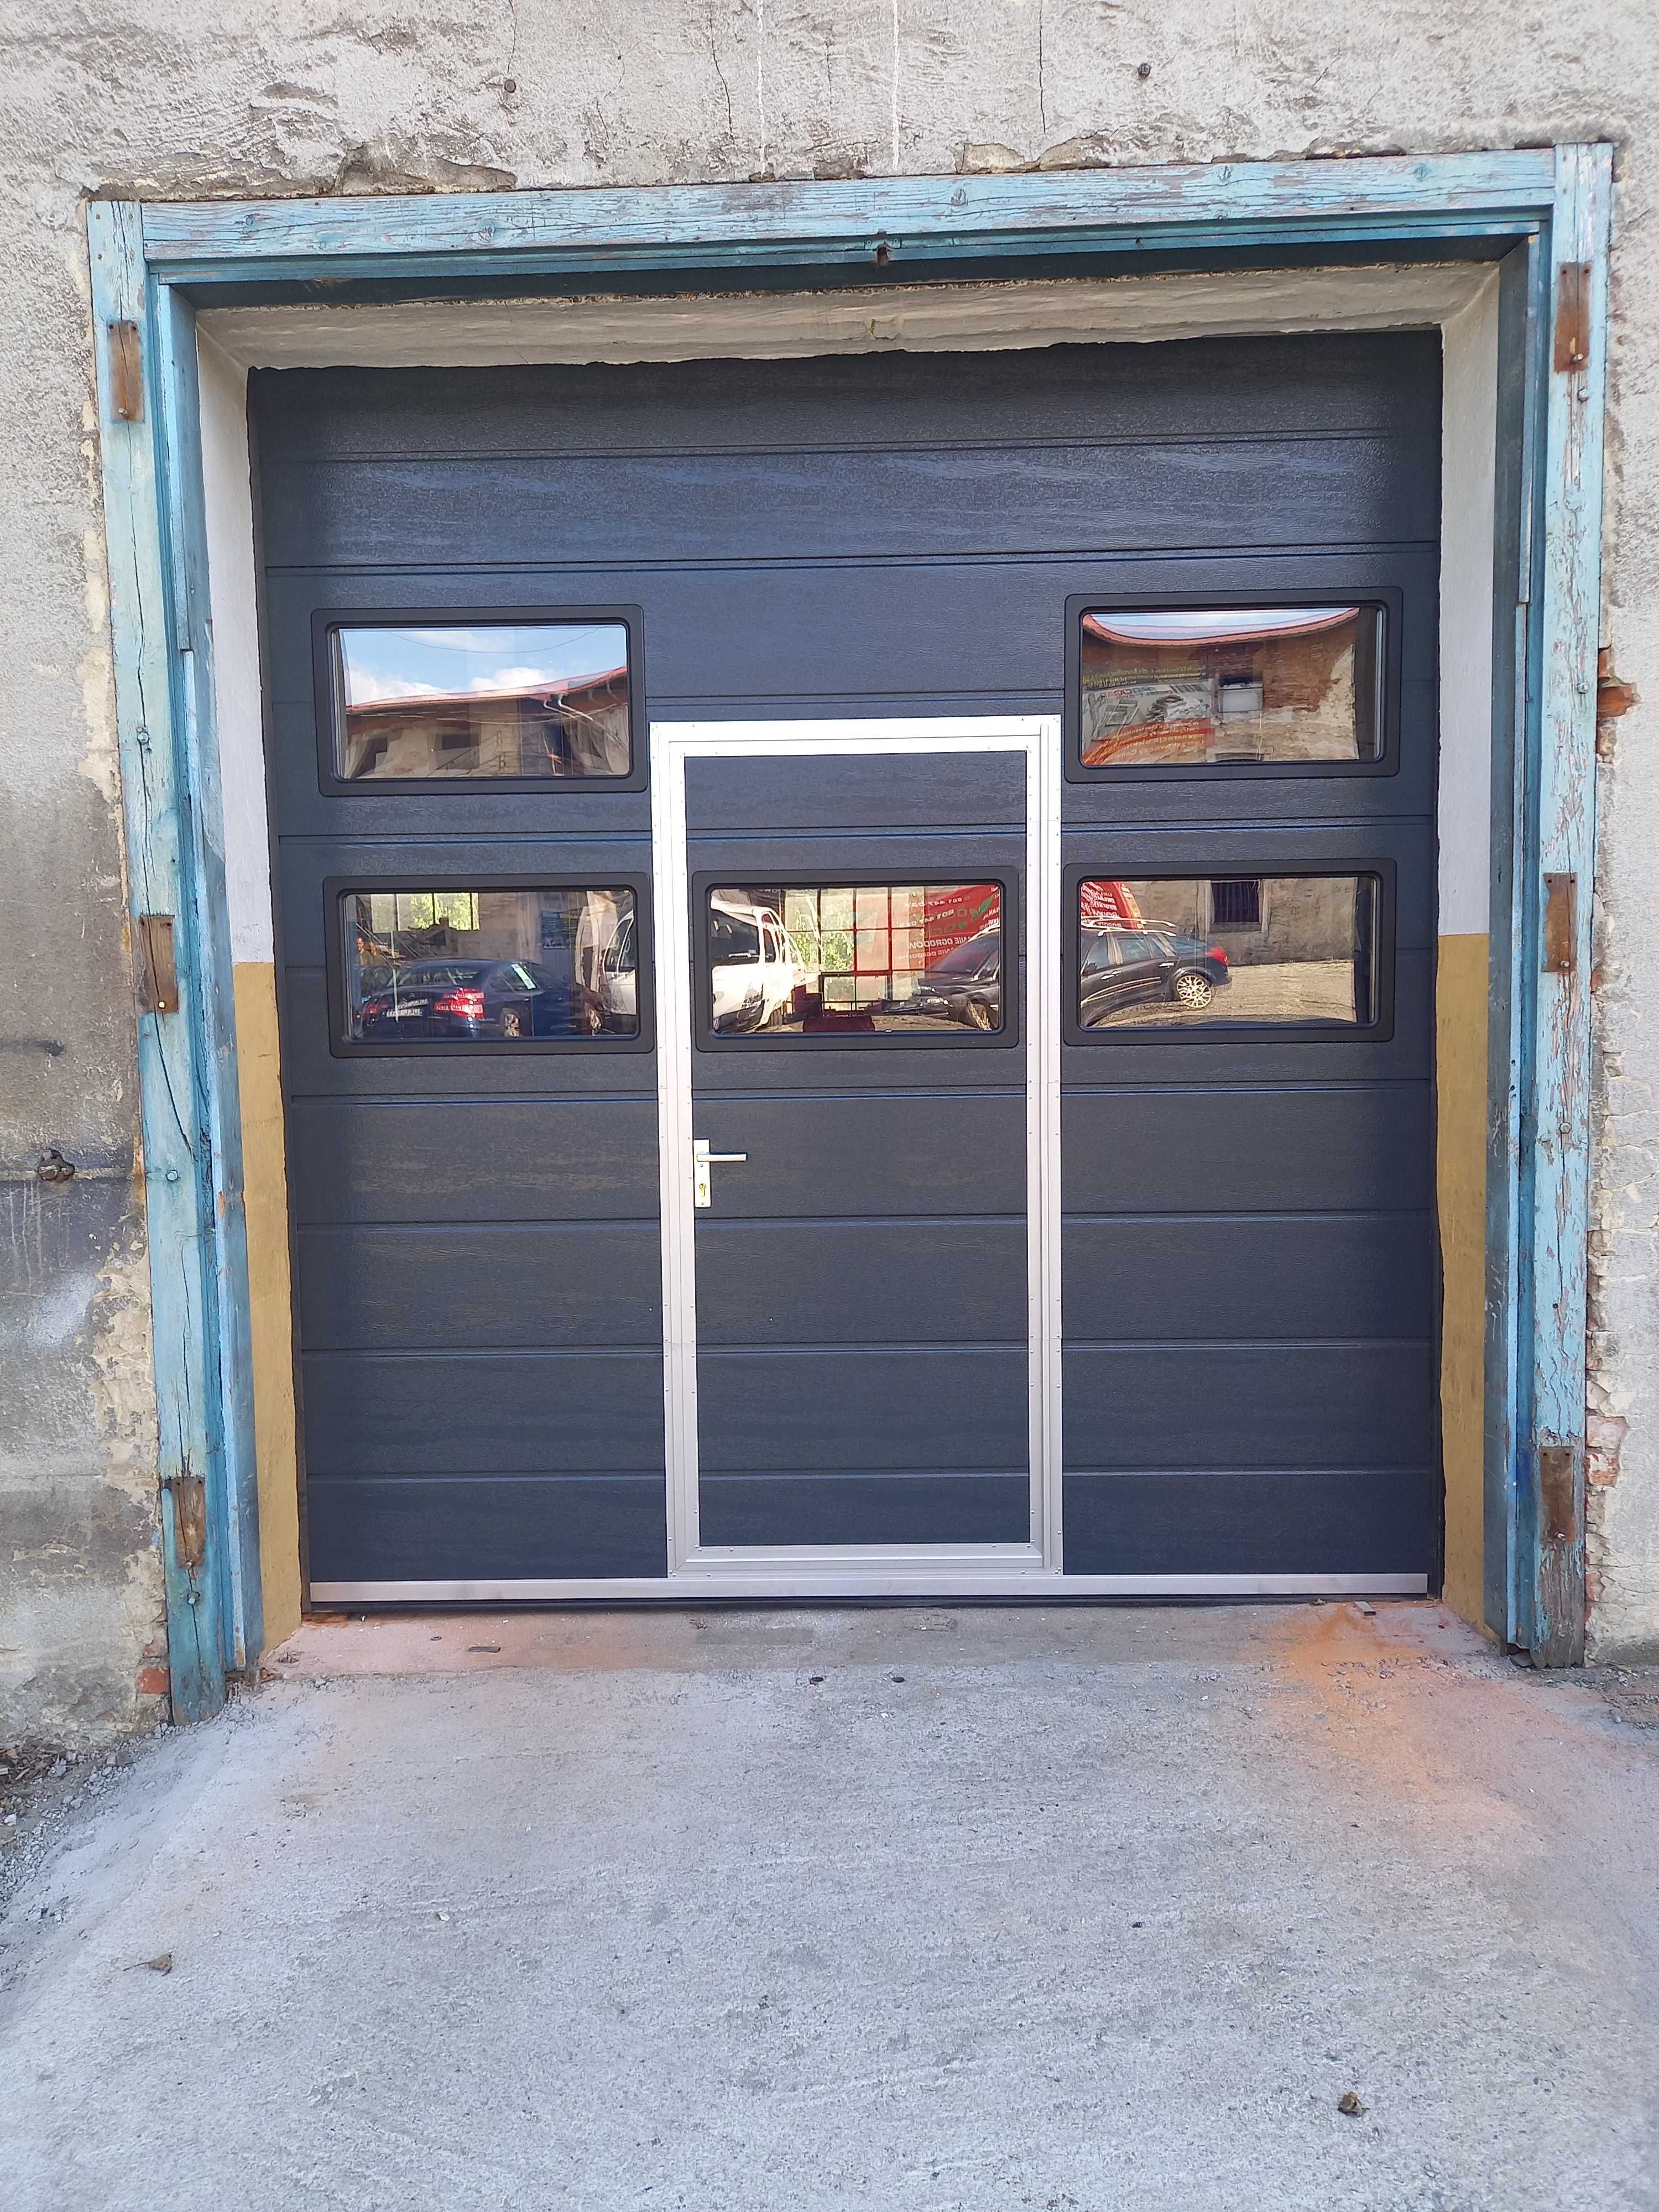 PRODUCENT brama segmentowa garażowa bramy garażowe PROSZOWICE